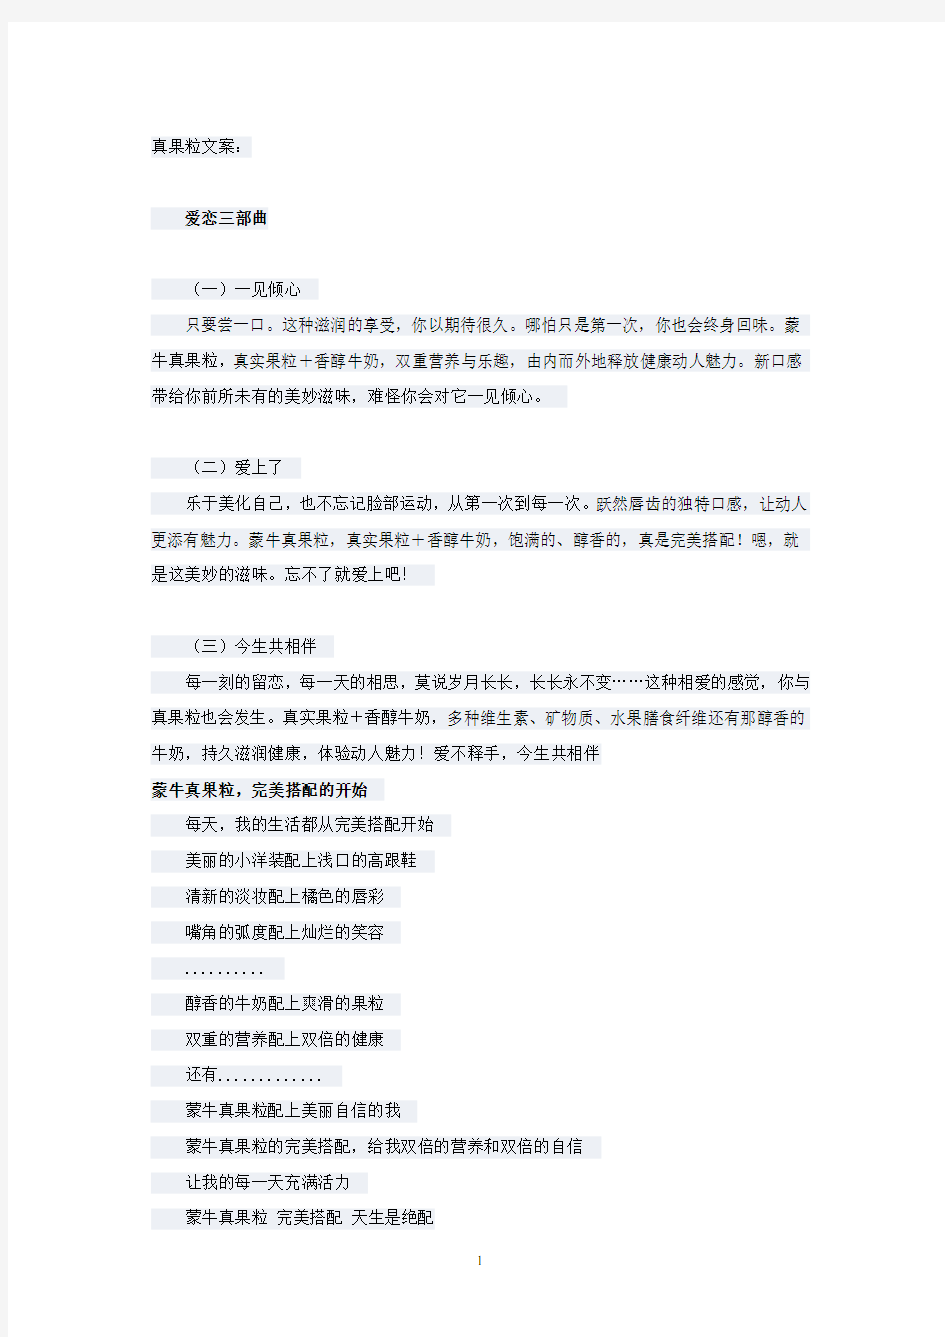 第四届大广赛获奖文案.pdf